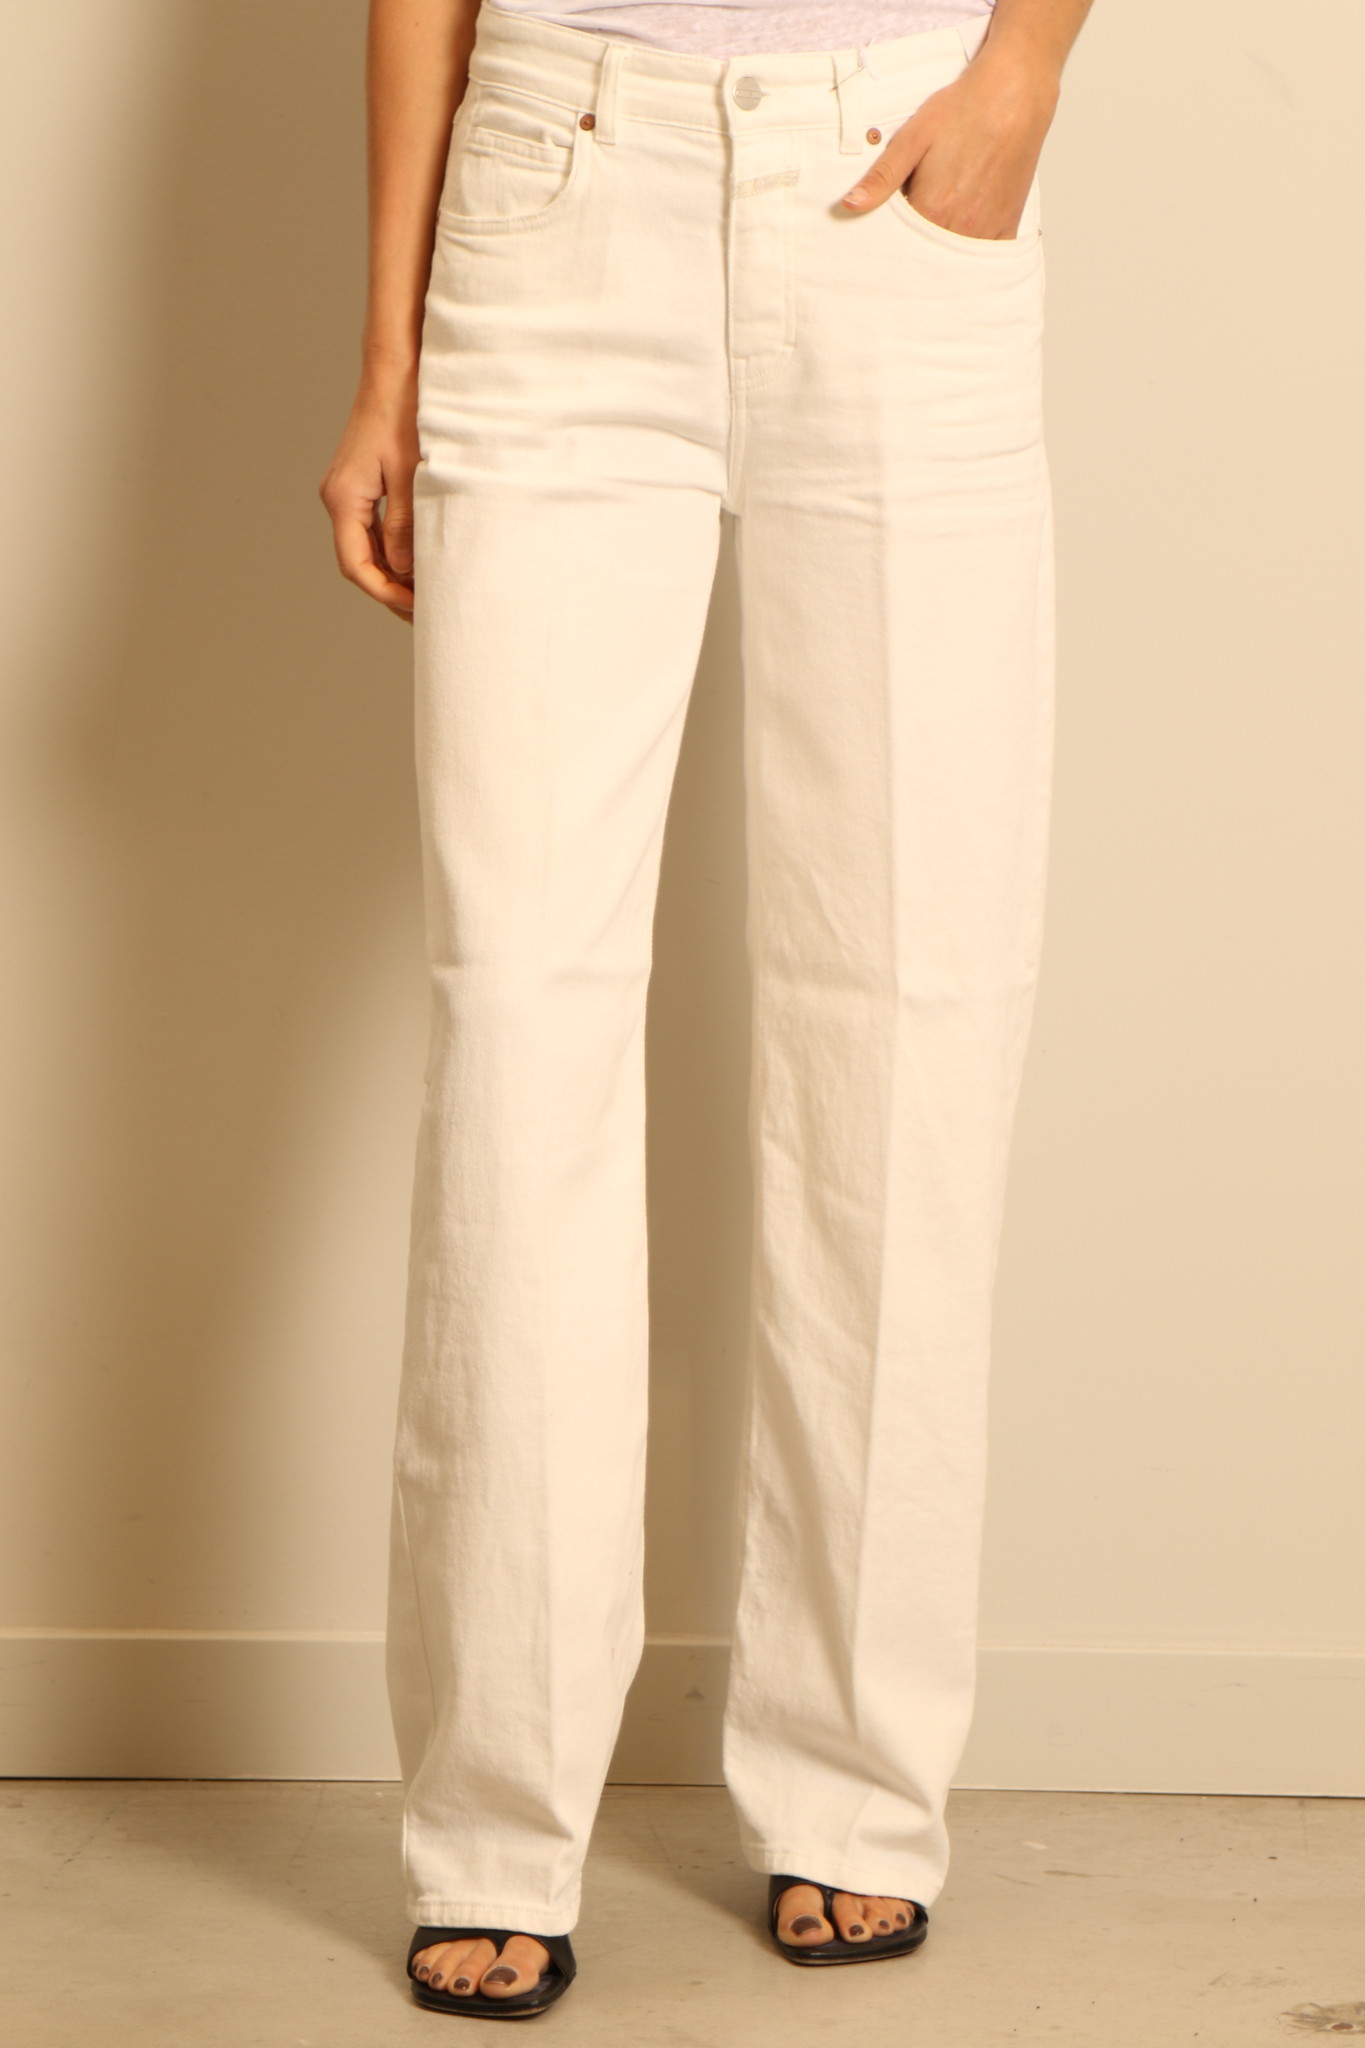 Closed - jeans - Nikka C91189-01J-29 - 200 white - Bylotte